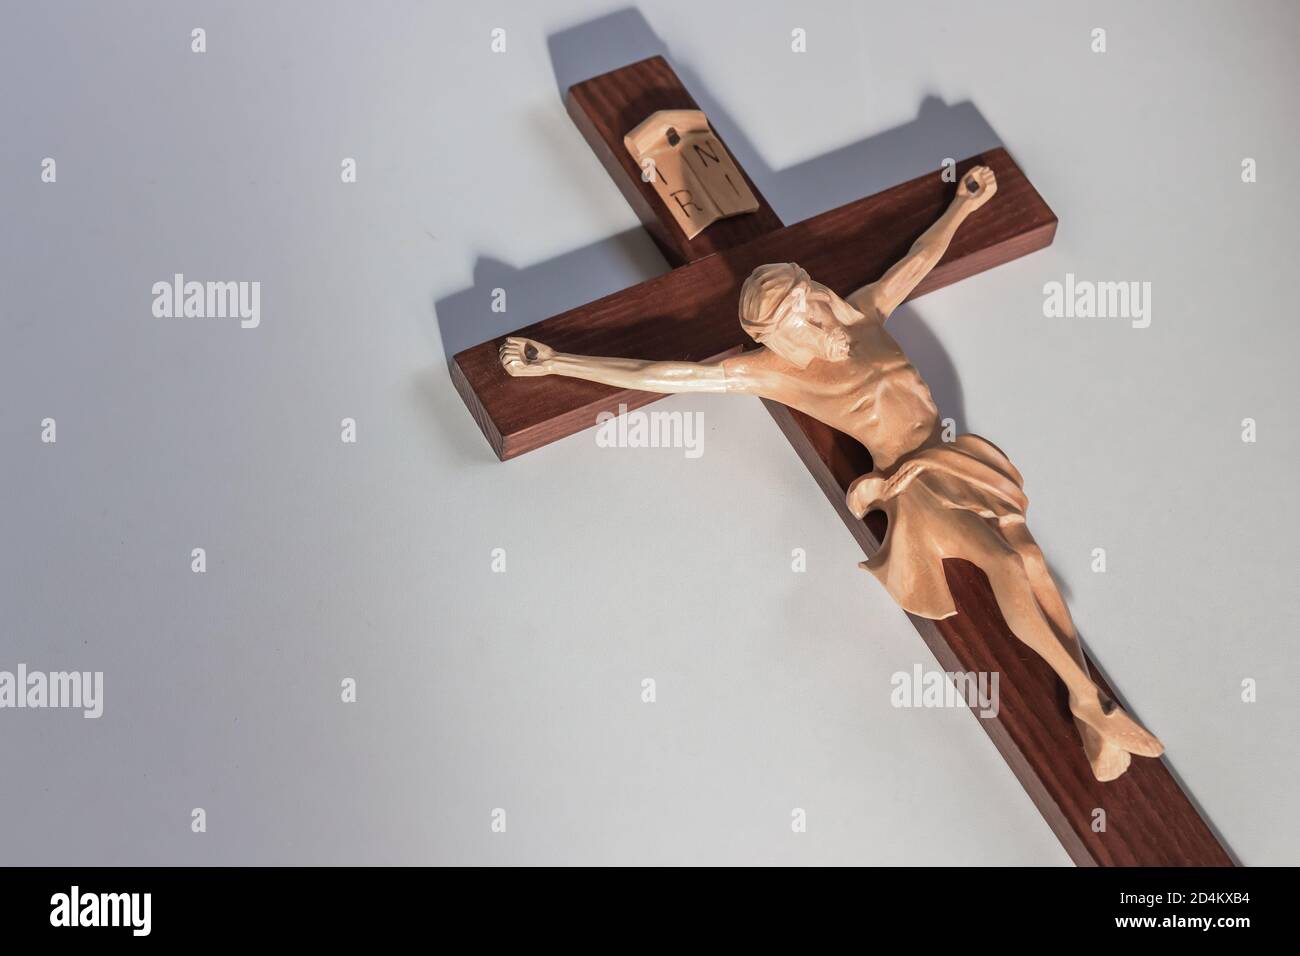 Catholic wood crucifix cross on plain white background in warm light Stock Photo